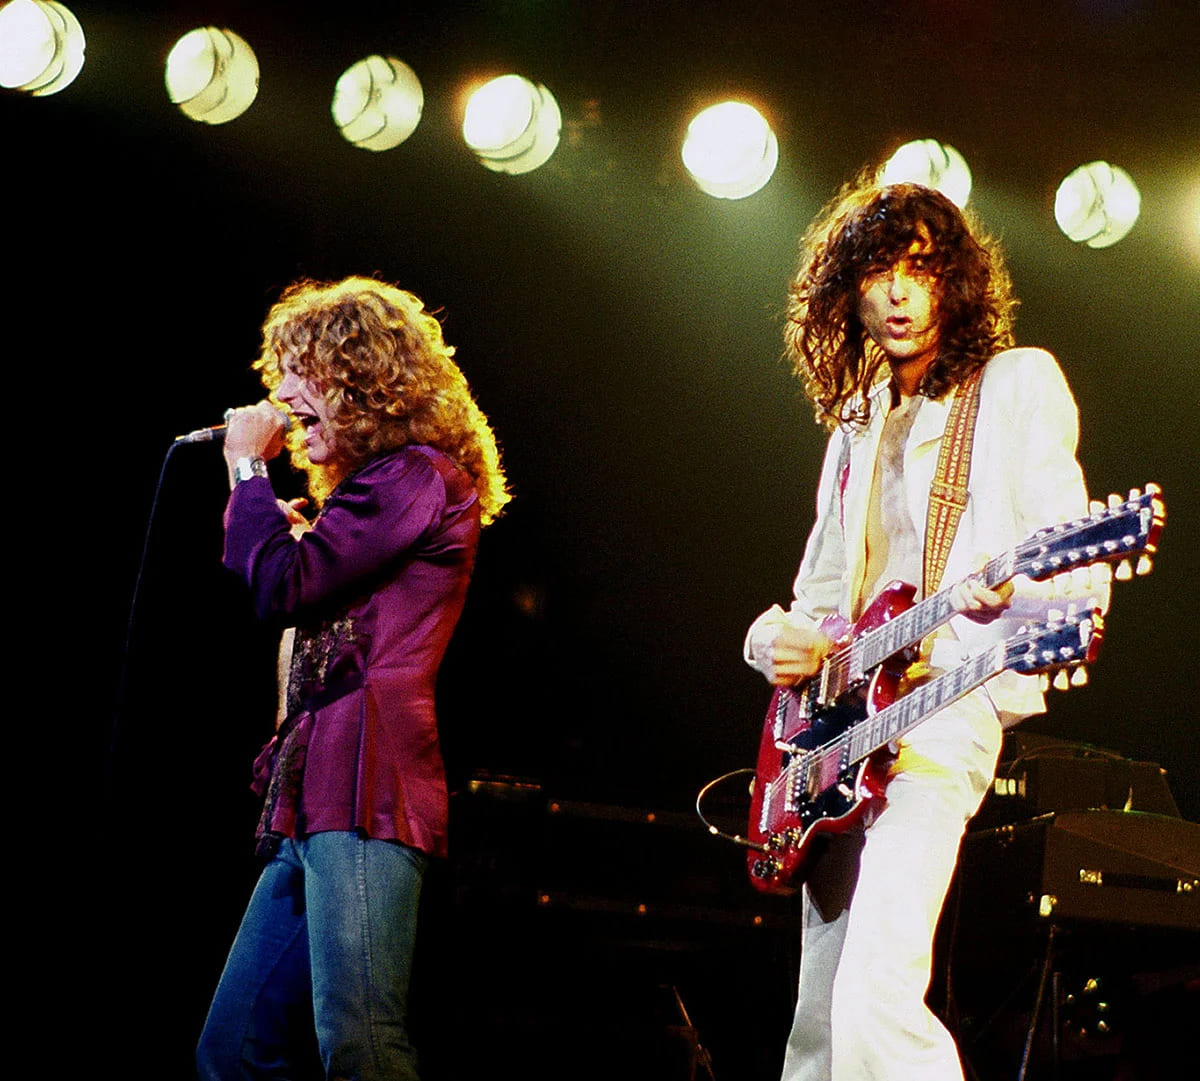 Robert Plant (links) und Jimmy Page (rechts) von Led Zeppelin, bei einem Konzert in Chicago, Illinois. Foto: Jim Sammaria